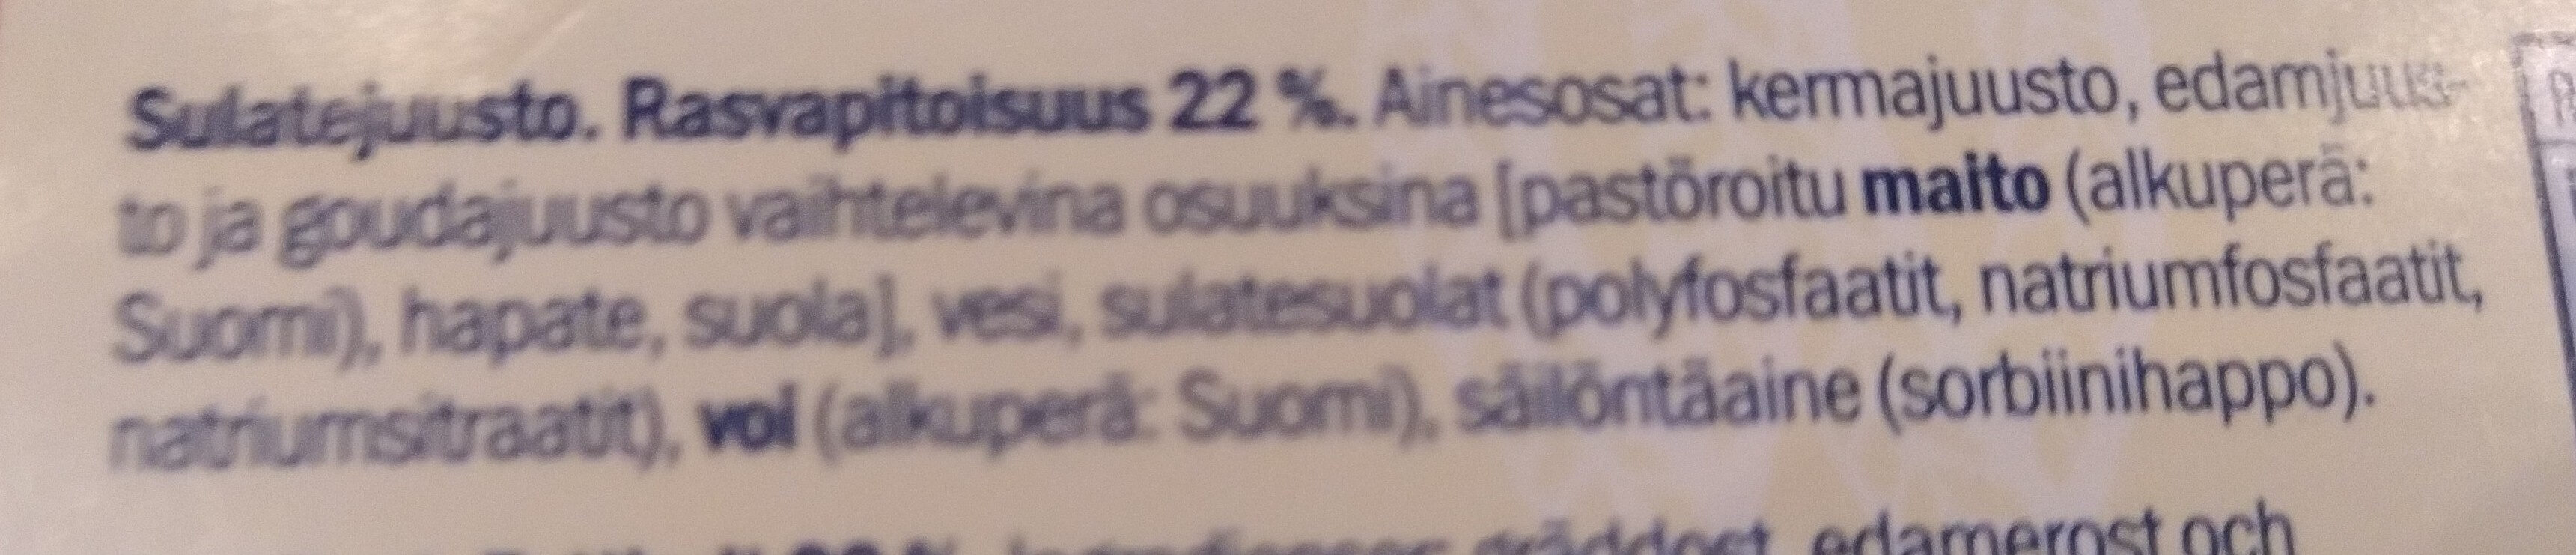 Tukkijätkä - Ainesosat - fi